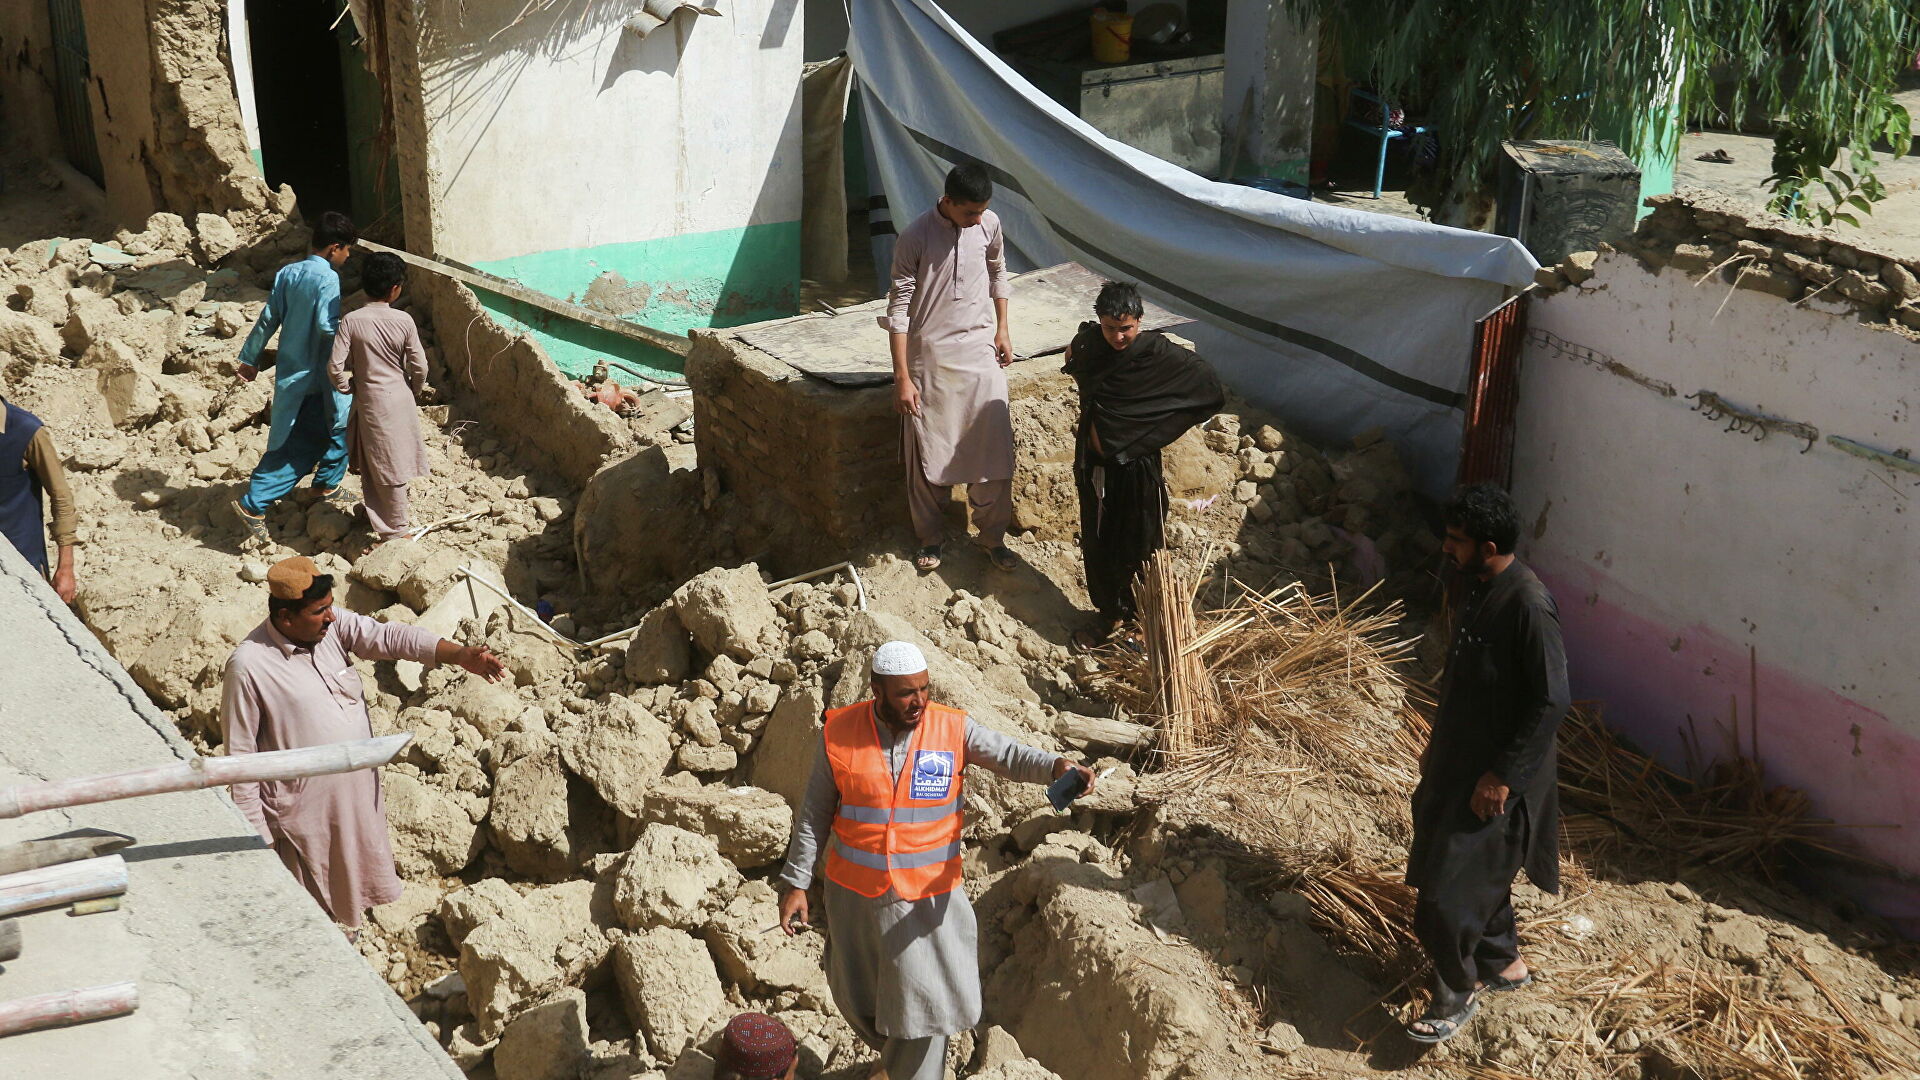 Шавкат Мирзиёев выразил соболезнования в связи с землетрясением в Пакистане